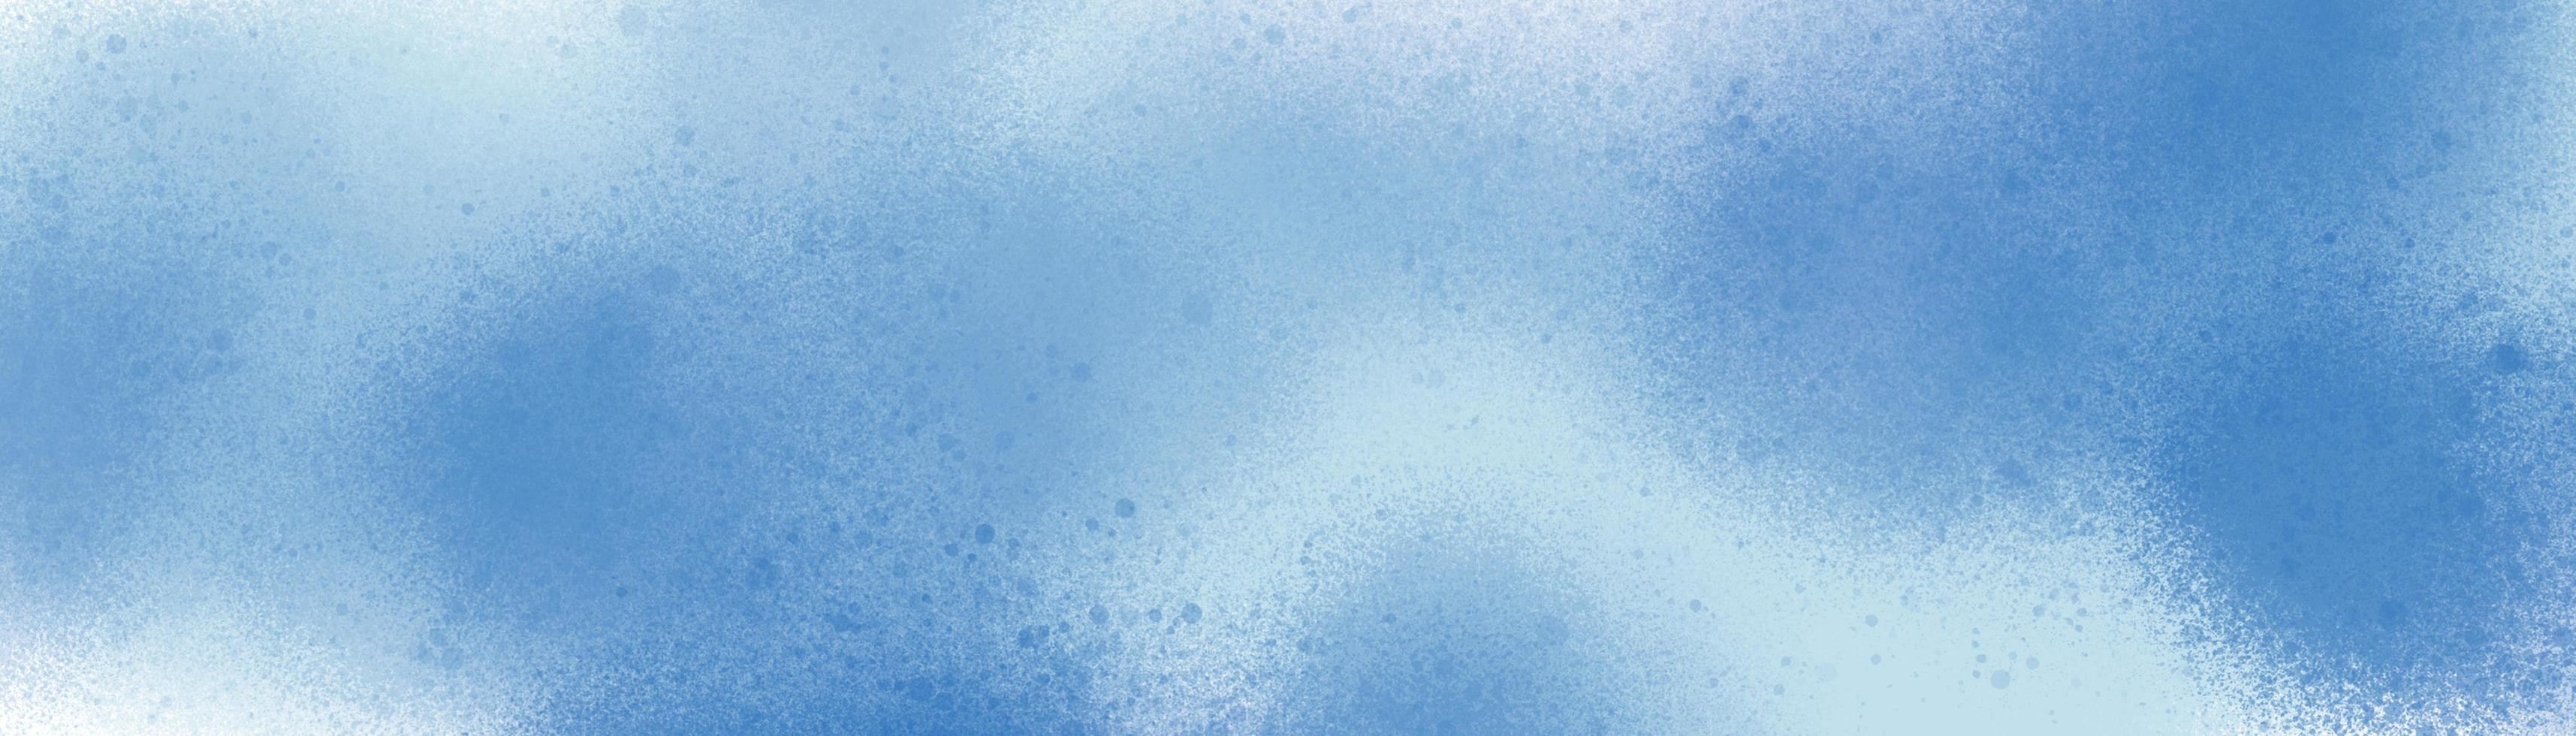 abstracte spatten-borstel achtergrondpatroon geschilderd in winterkleuren. blauw en wit in stippentextuurelementen voor creatief ontwerp. foto